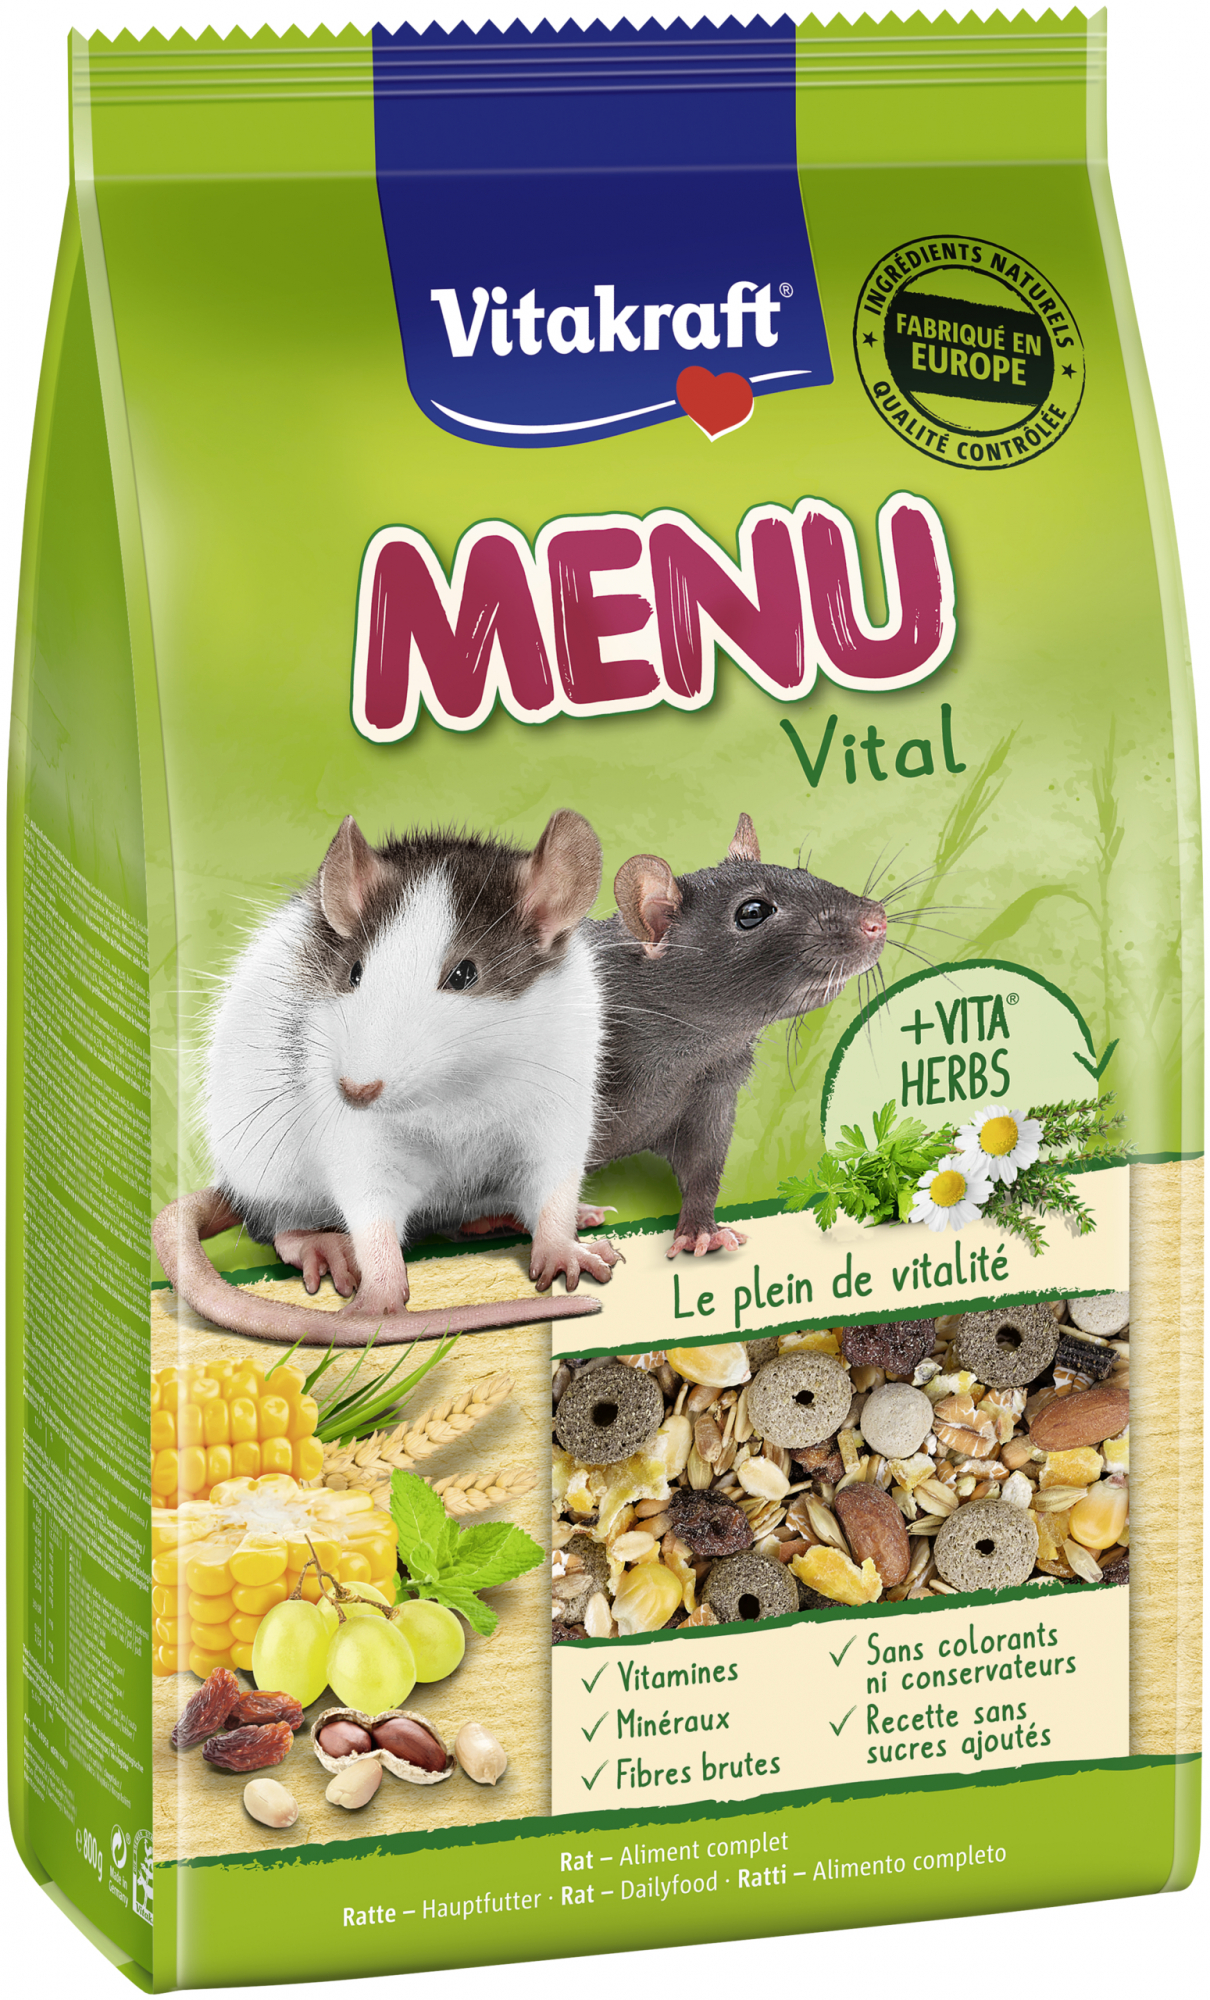 Vitakraft menu vital rat